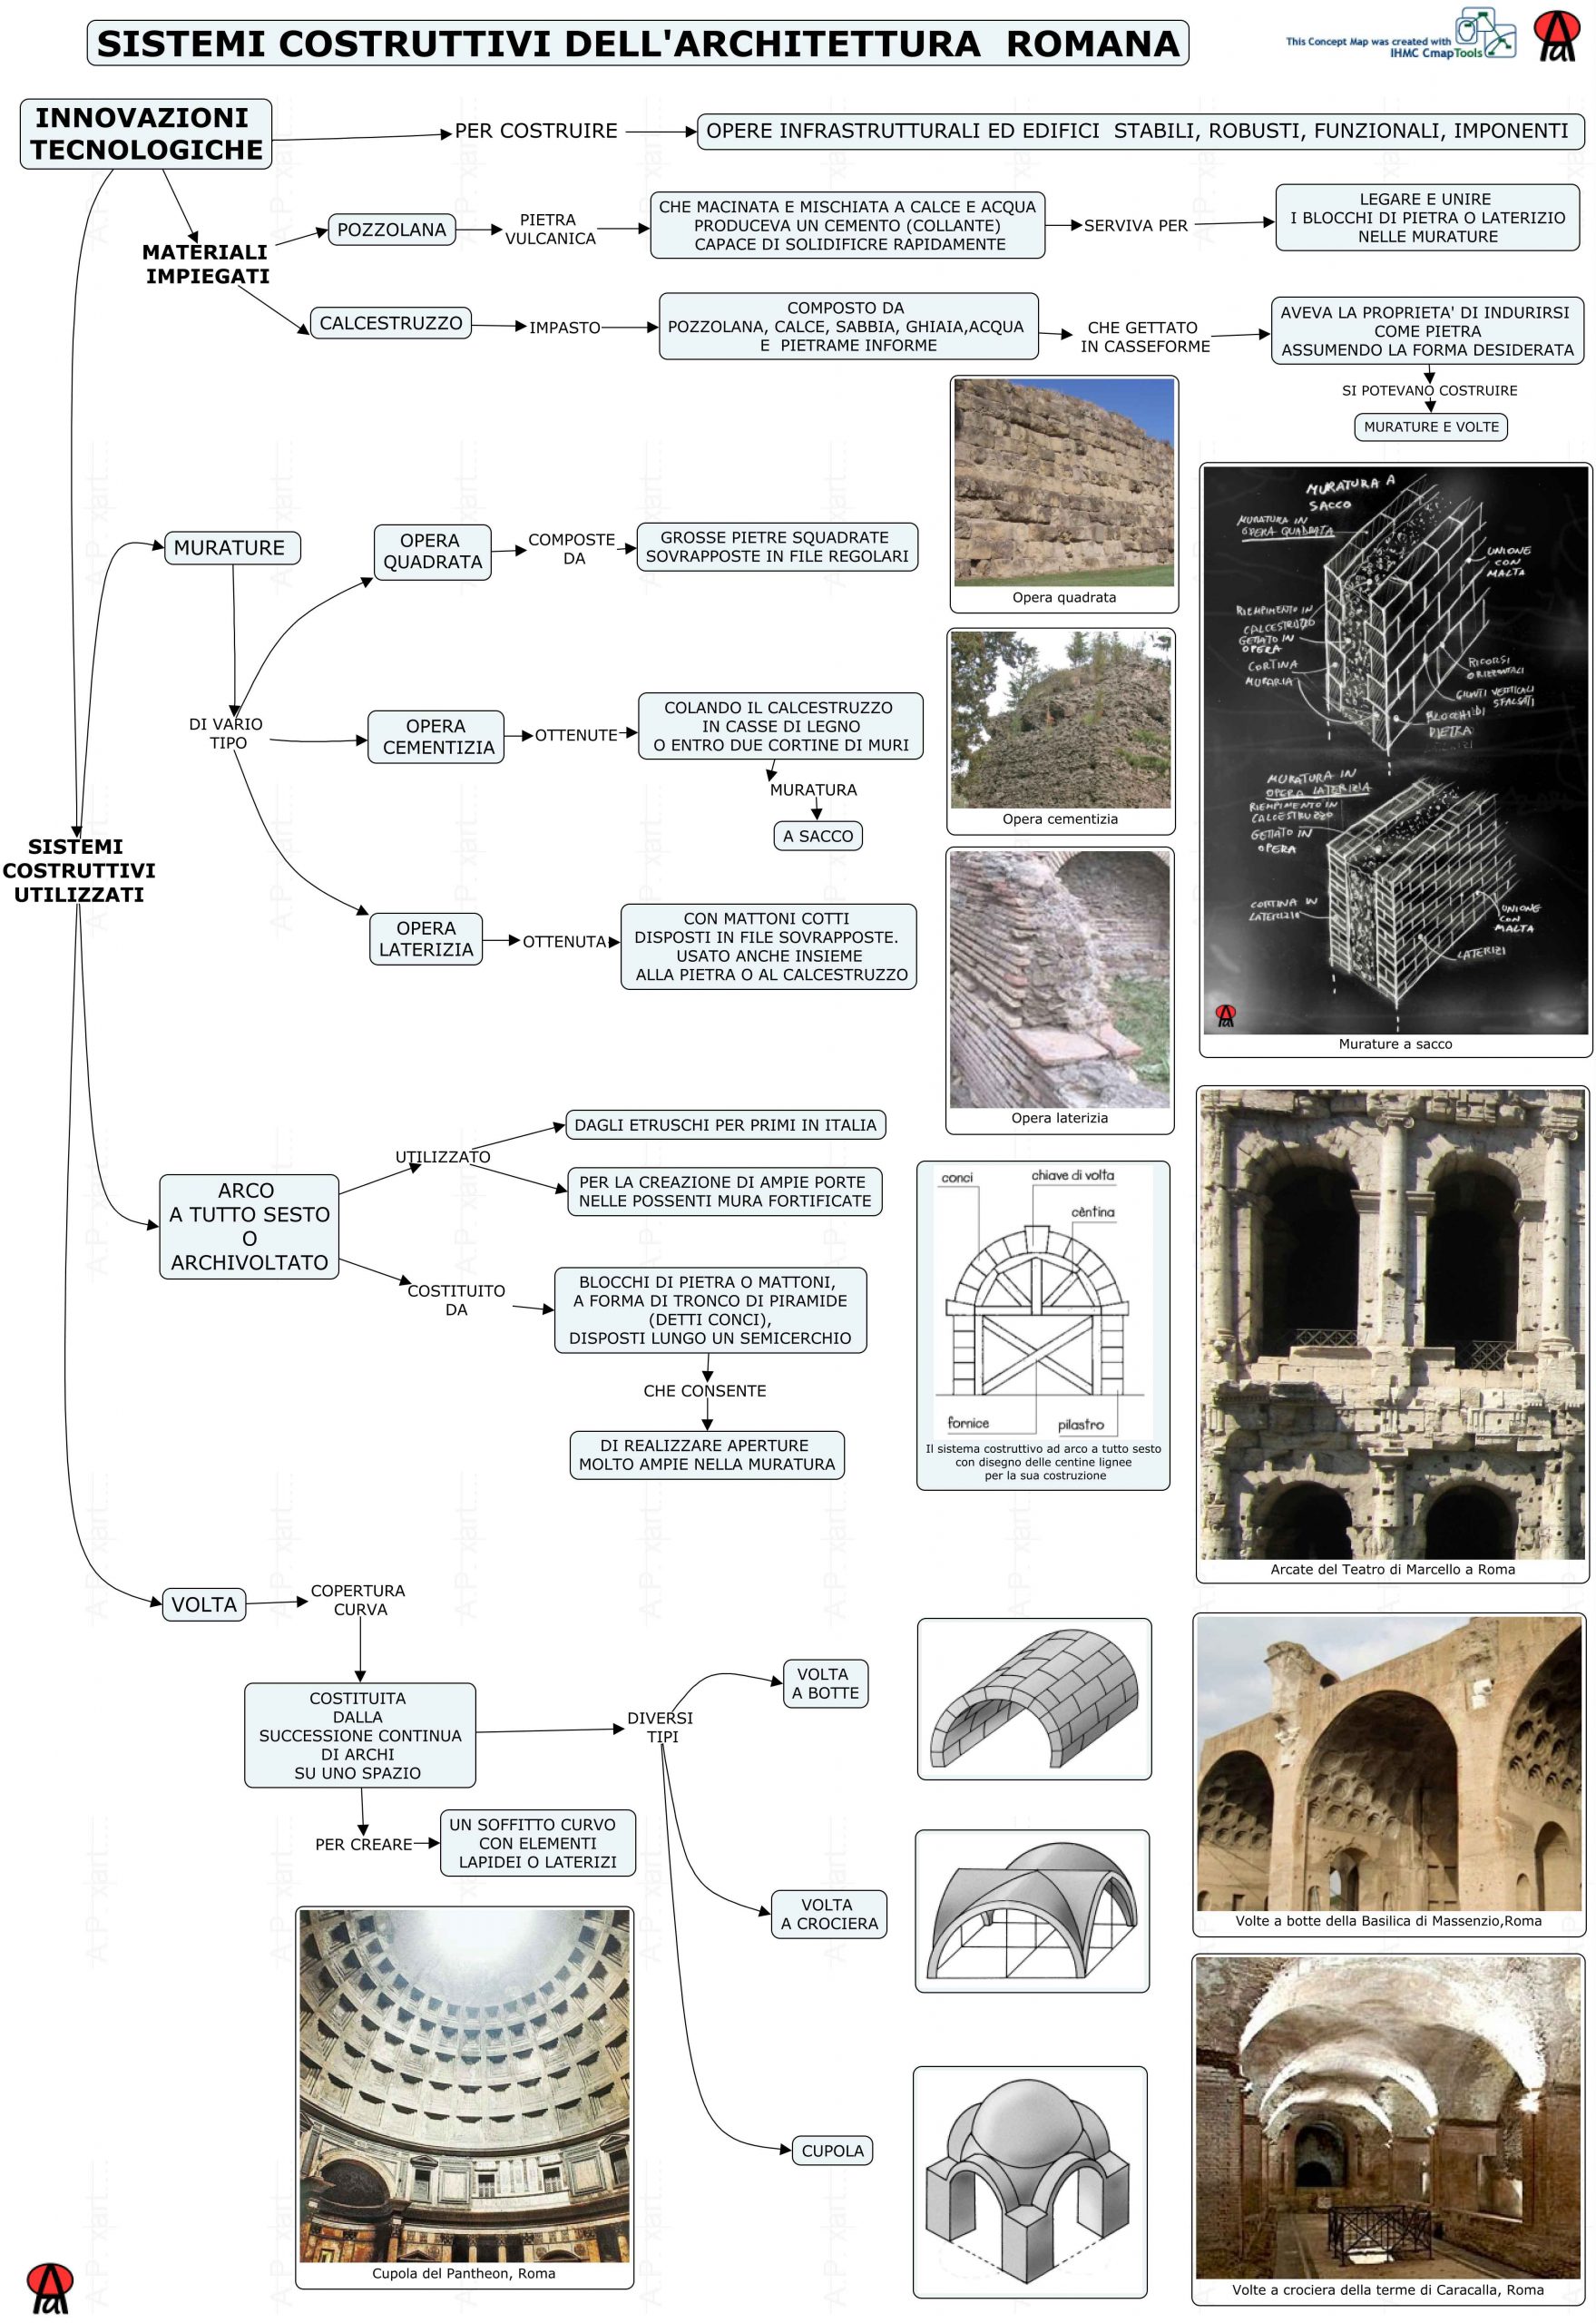 Mappa concettuale su sistemi costruttivi dell'architettura romana.